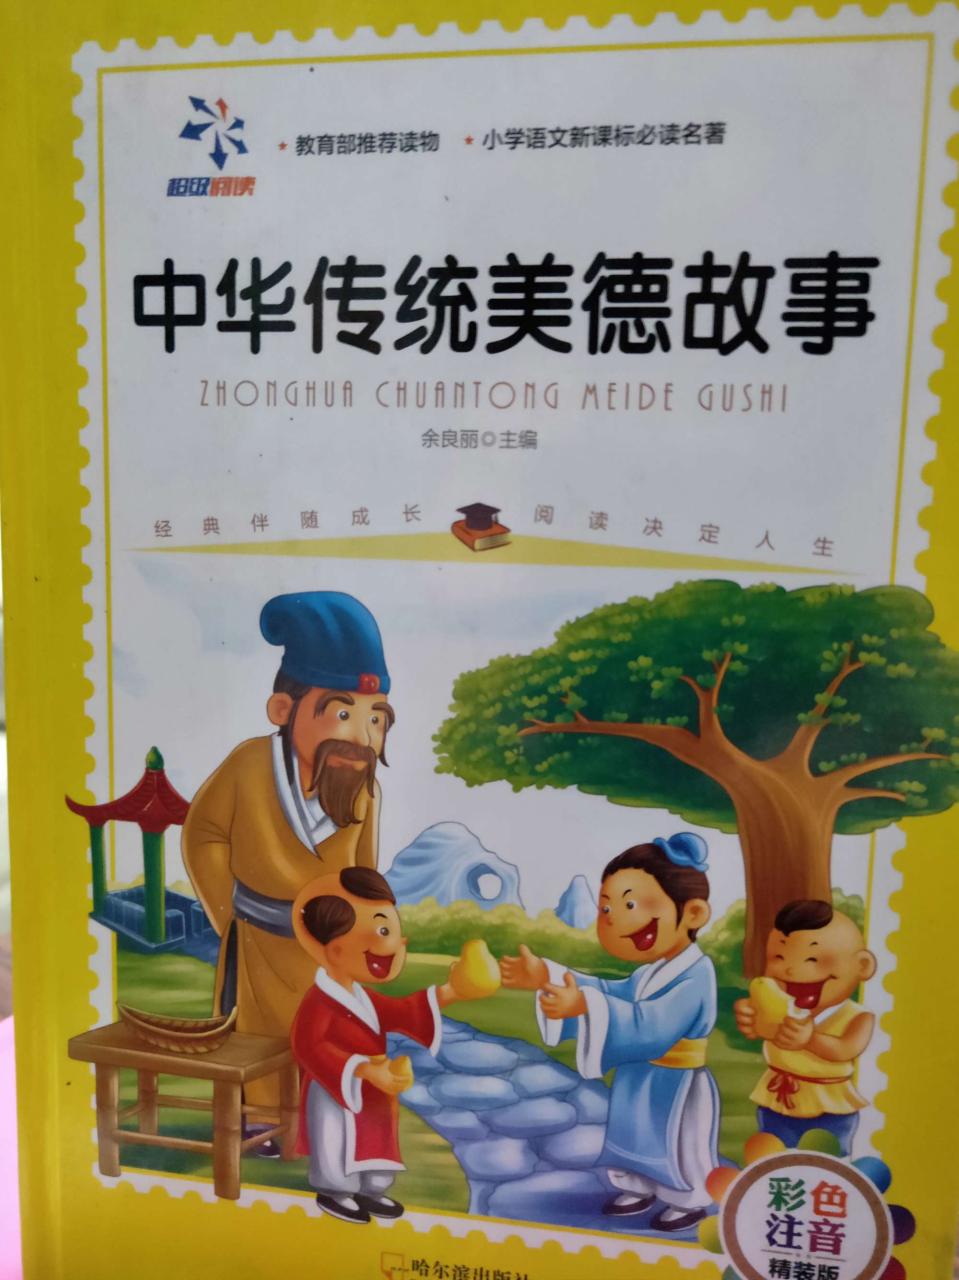 1、中华传统美德小故事有哪些？